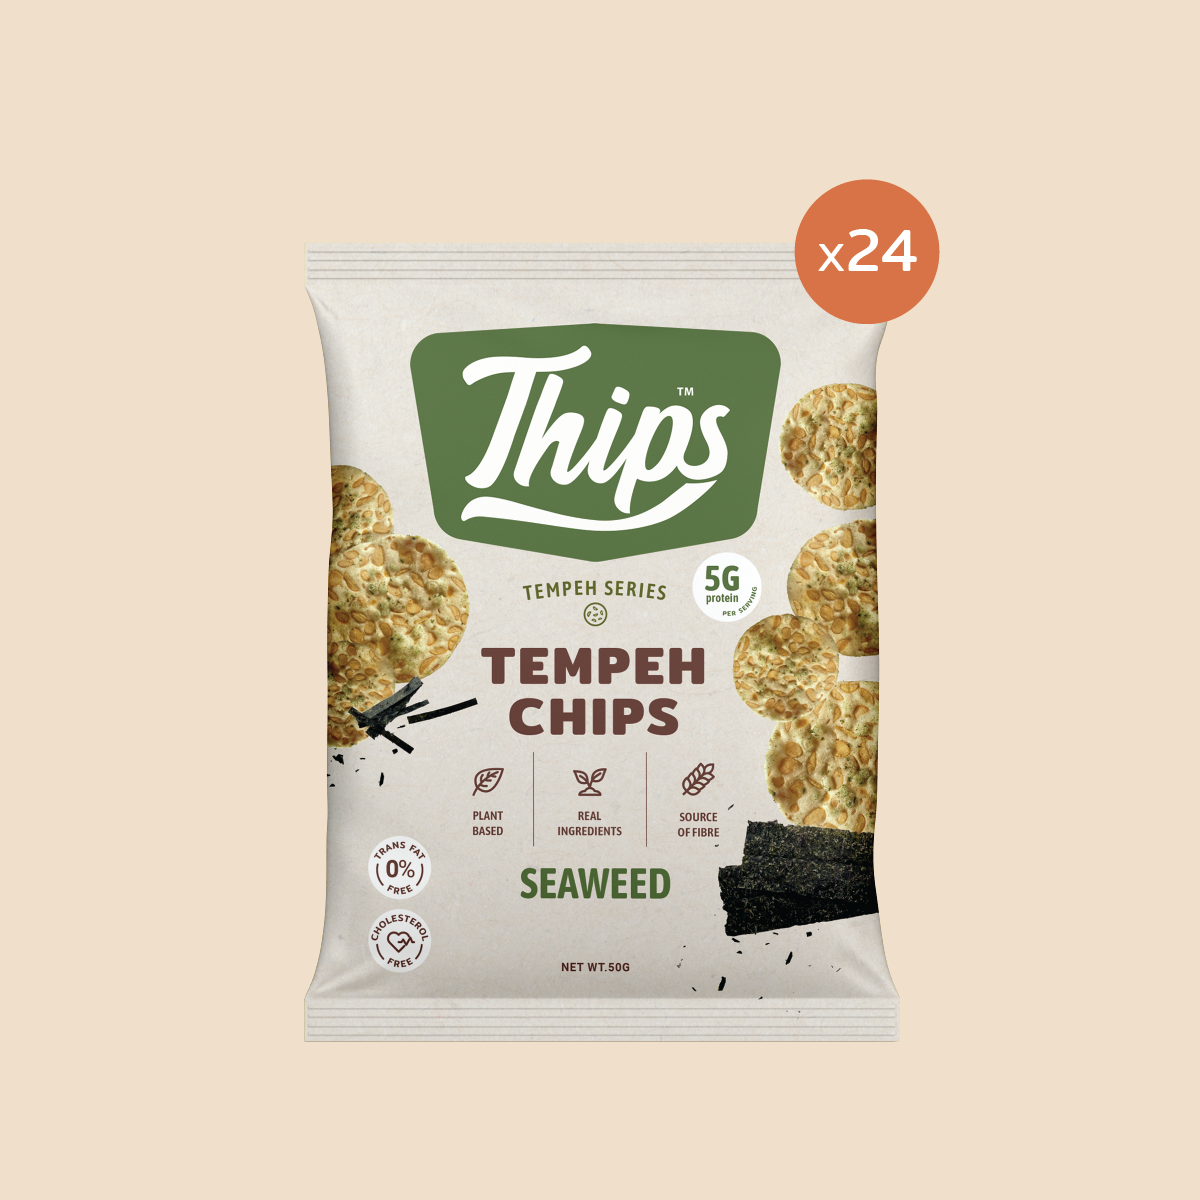 [Bundle of 6, 12, 24] Thips Seaweed Tempeh Chips